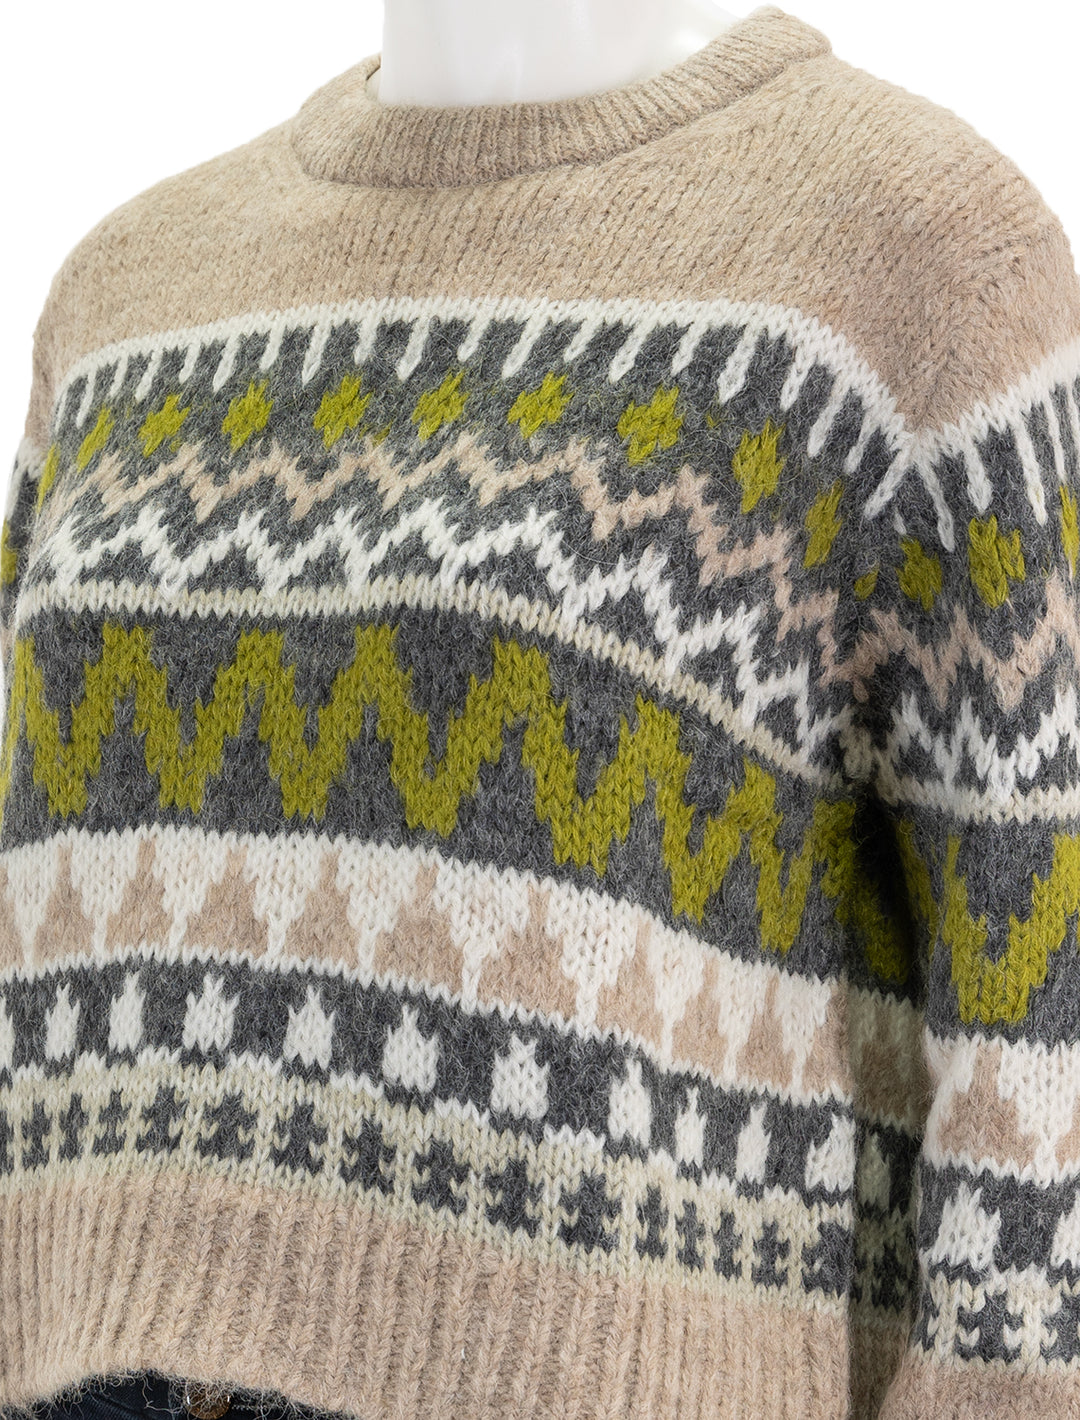 Close-up view of Velvet's Makenzie Sweater in Pistachio Multi.